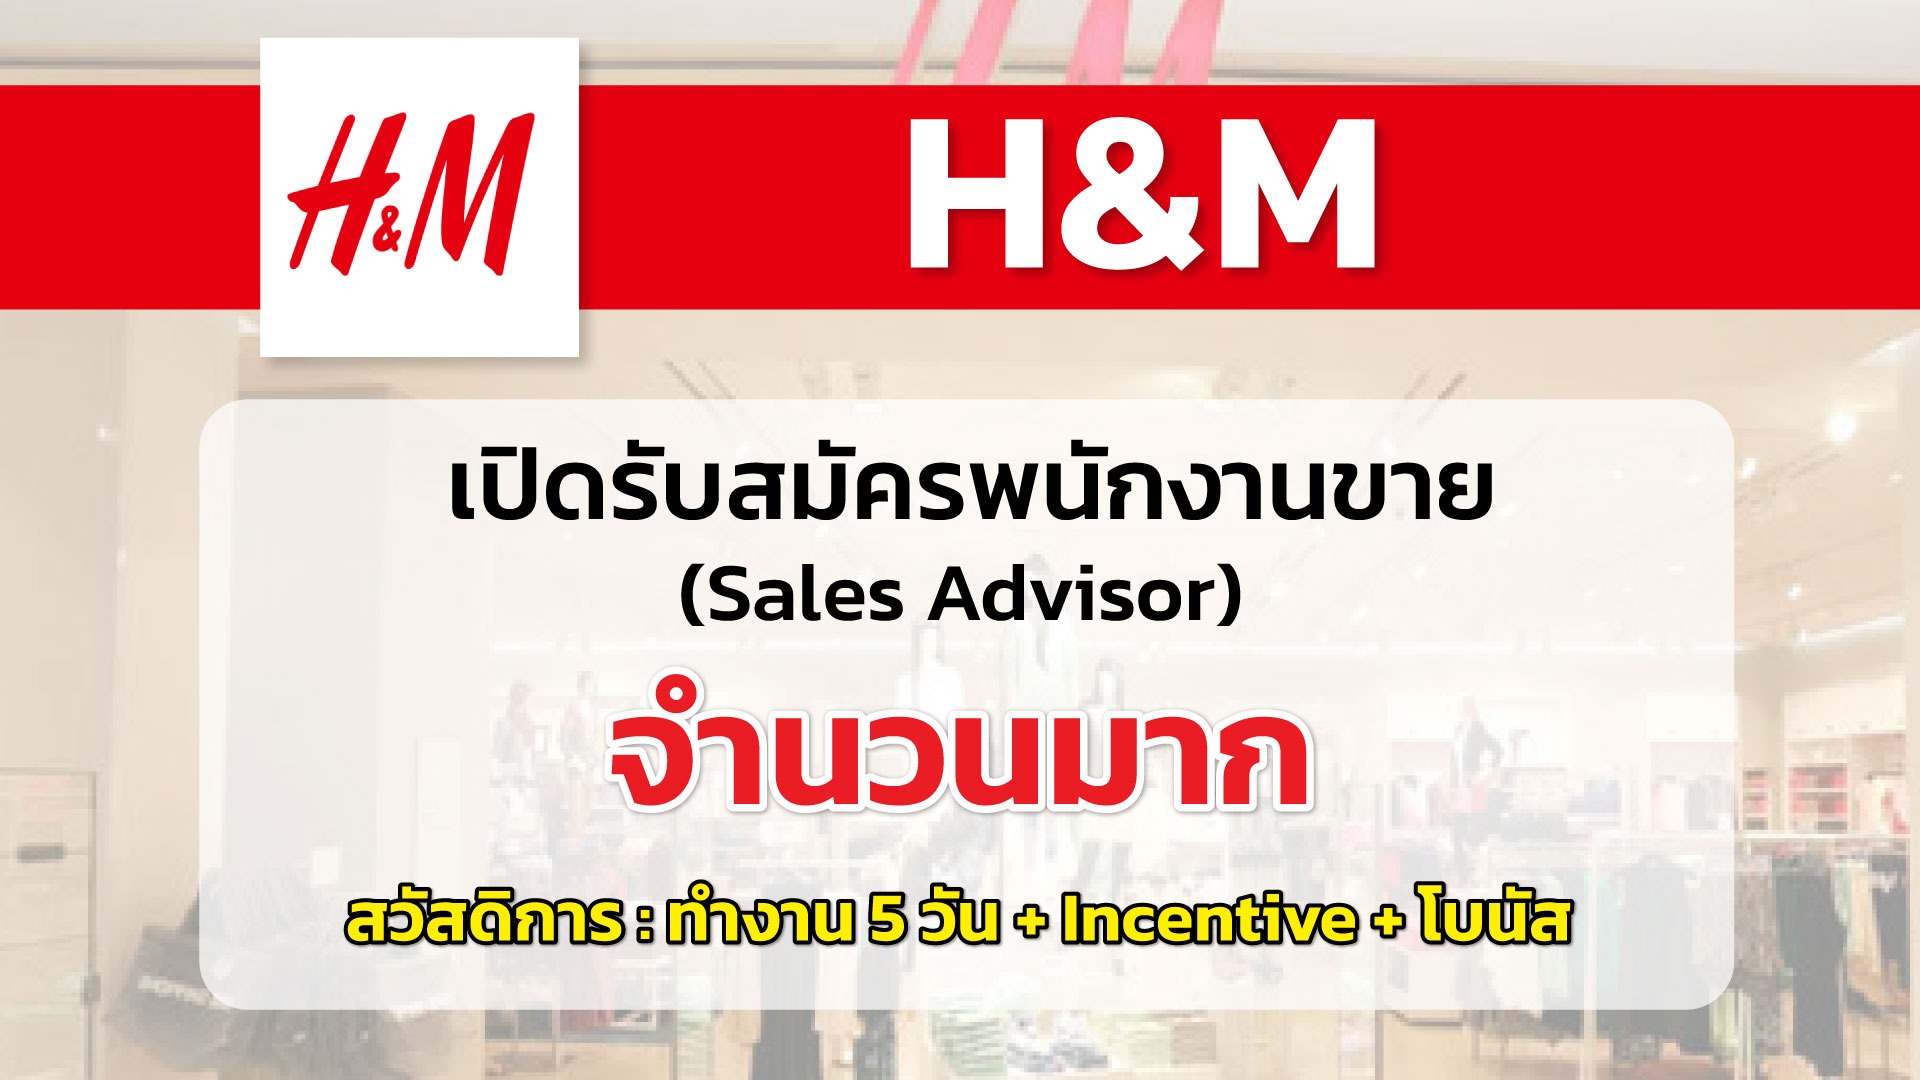 H&M เปิดรับสมัครพนักงานขายจำนวนมาก 